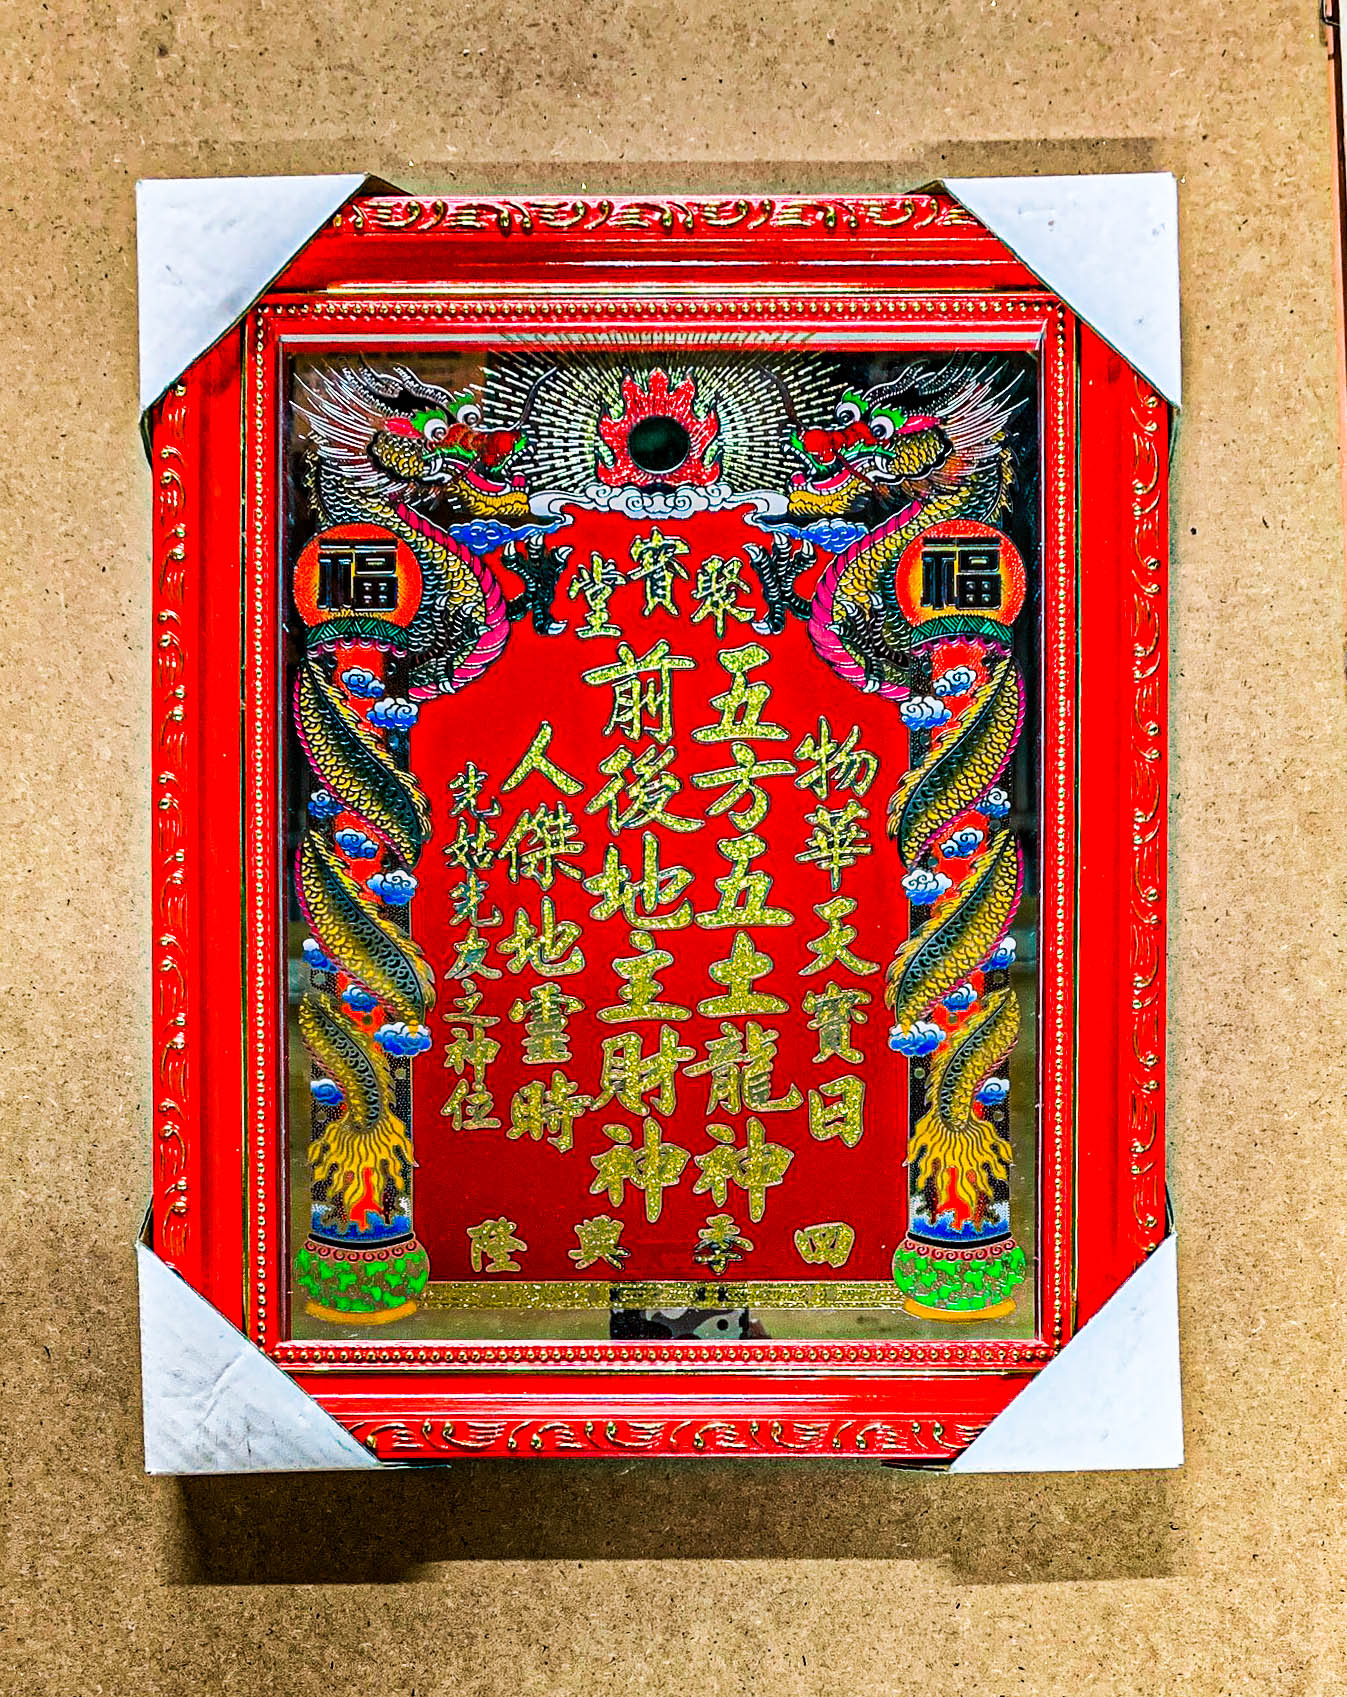 Bài vị Thần Tài Thổ Địa Chạm Nét To - Chữ Kim Tuyến - Khung Gỗ - Mẫu Rồng Truyền Thống (có 6 size)